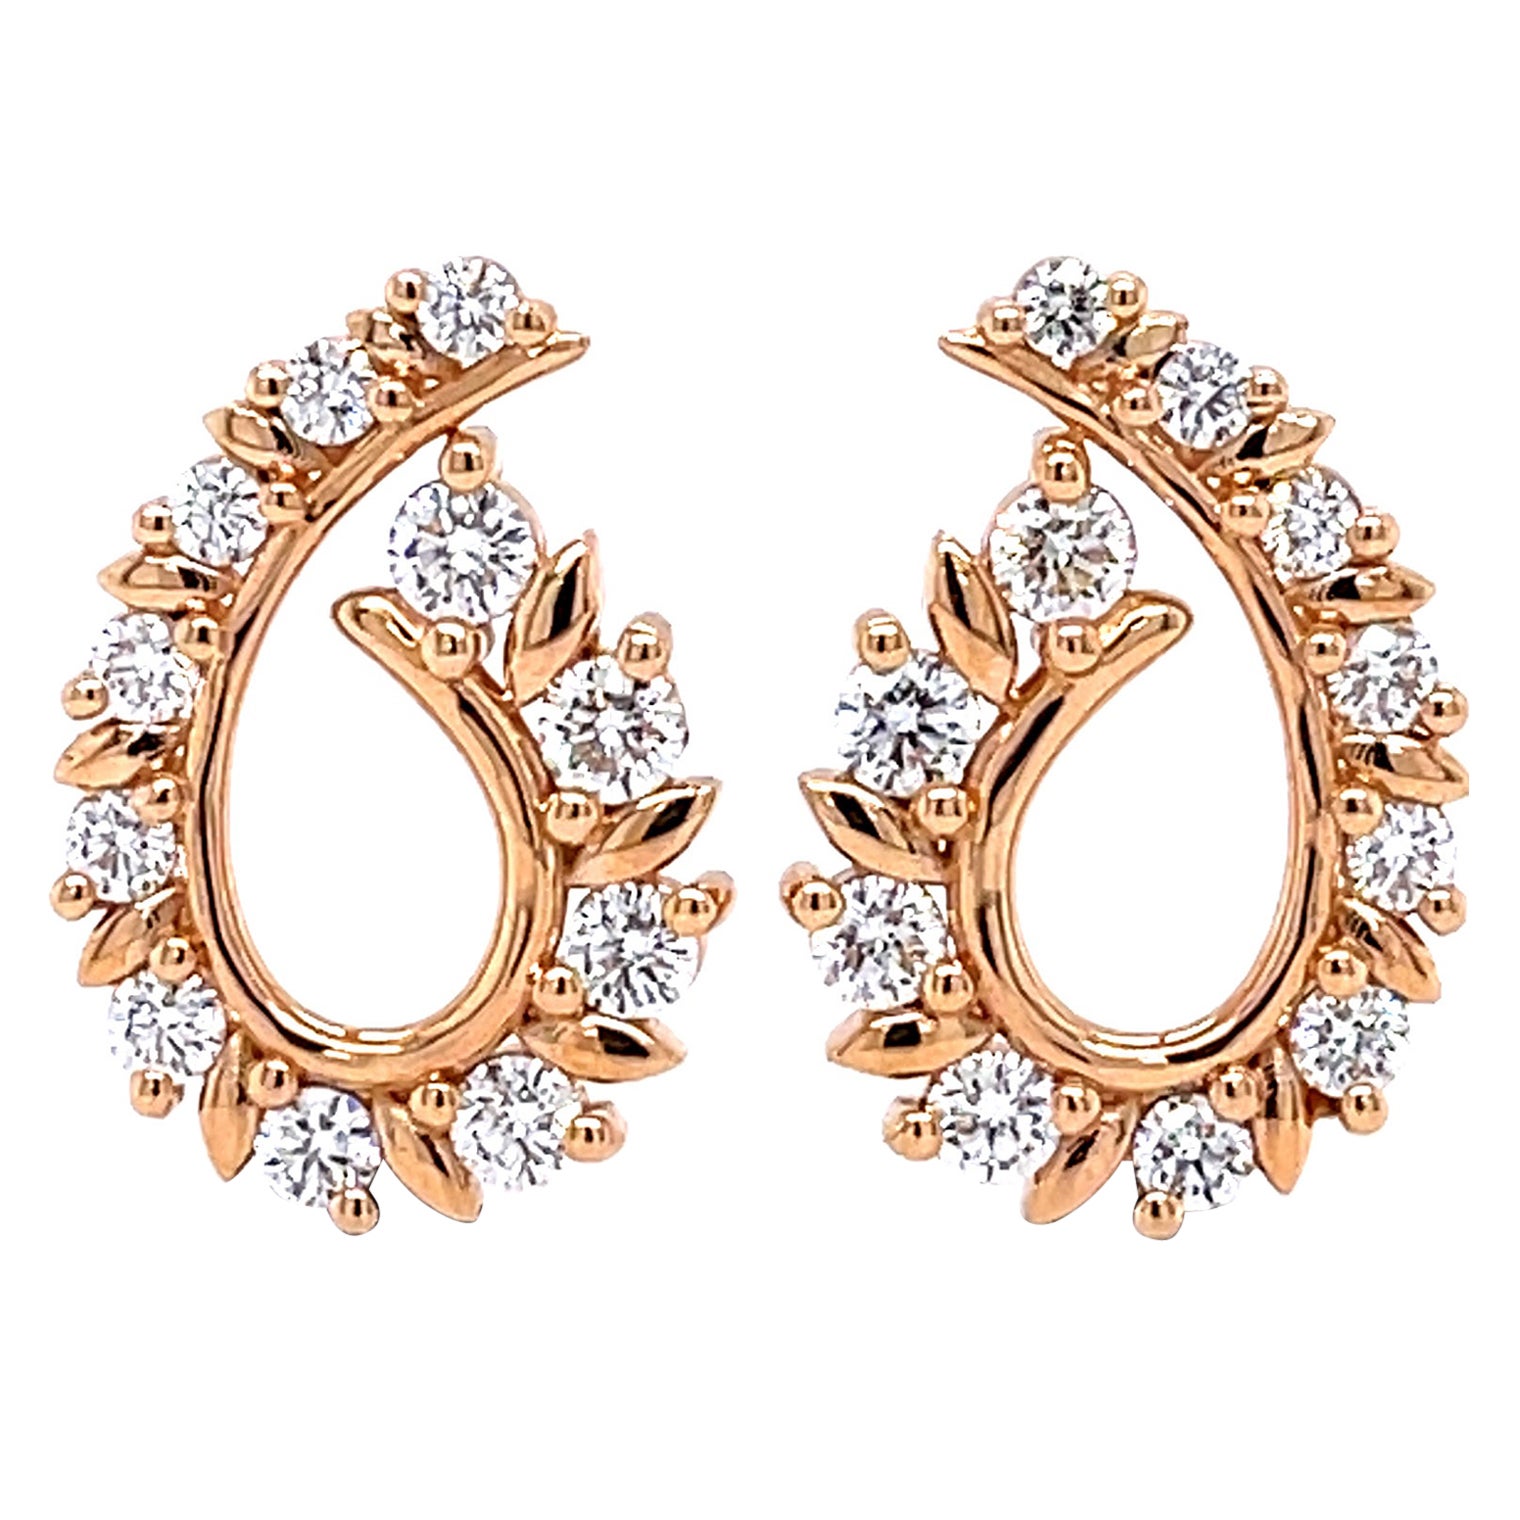 1.45 TCW Diamond Earrings in 18K Rose Gold